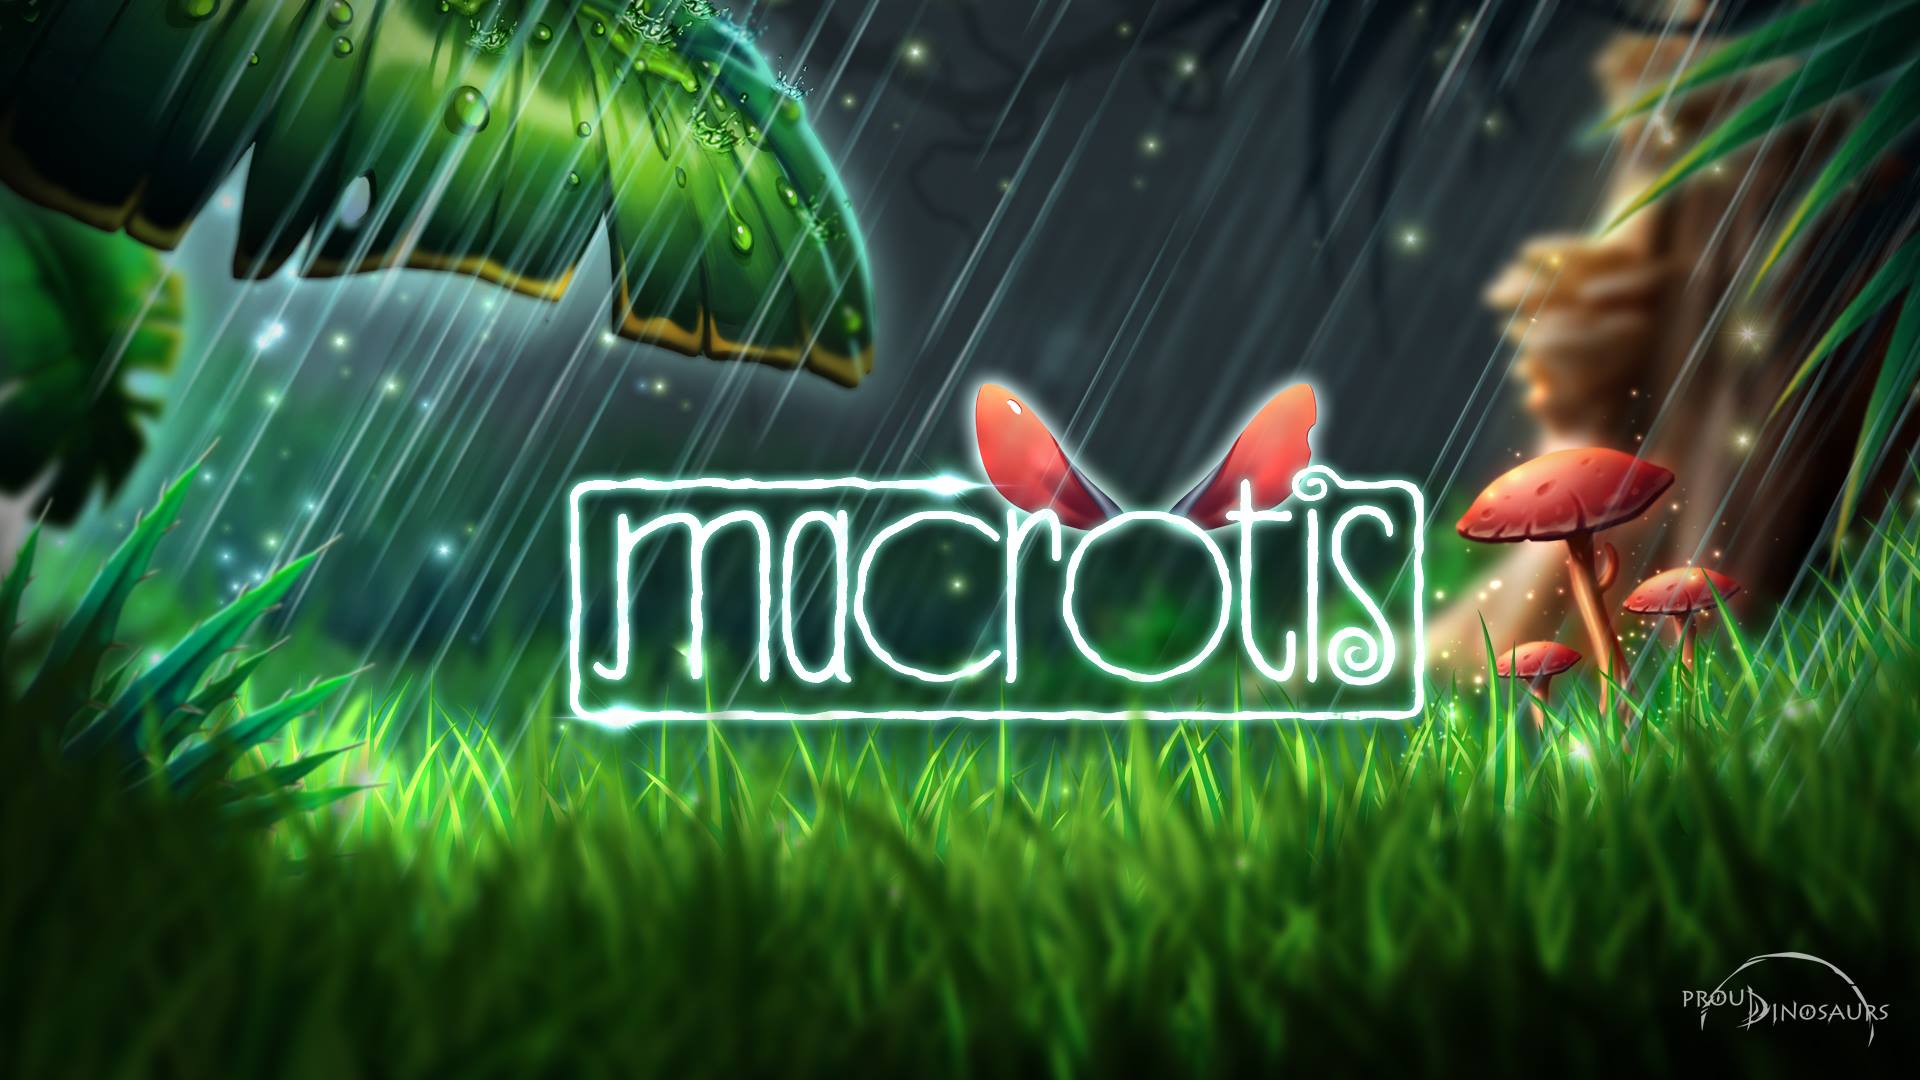 Macrotis Header Image